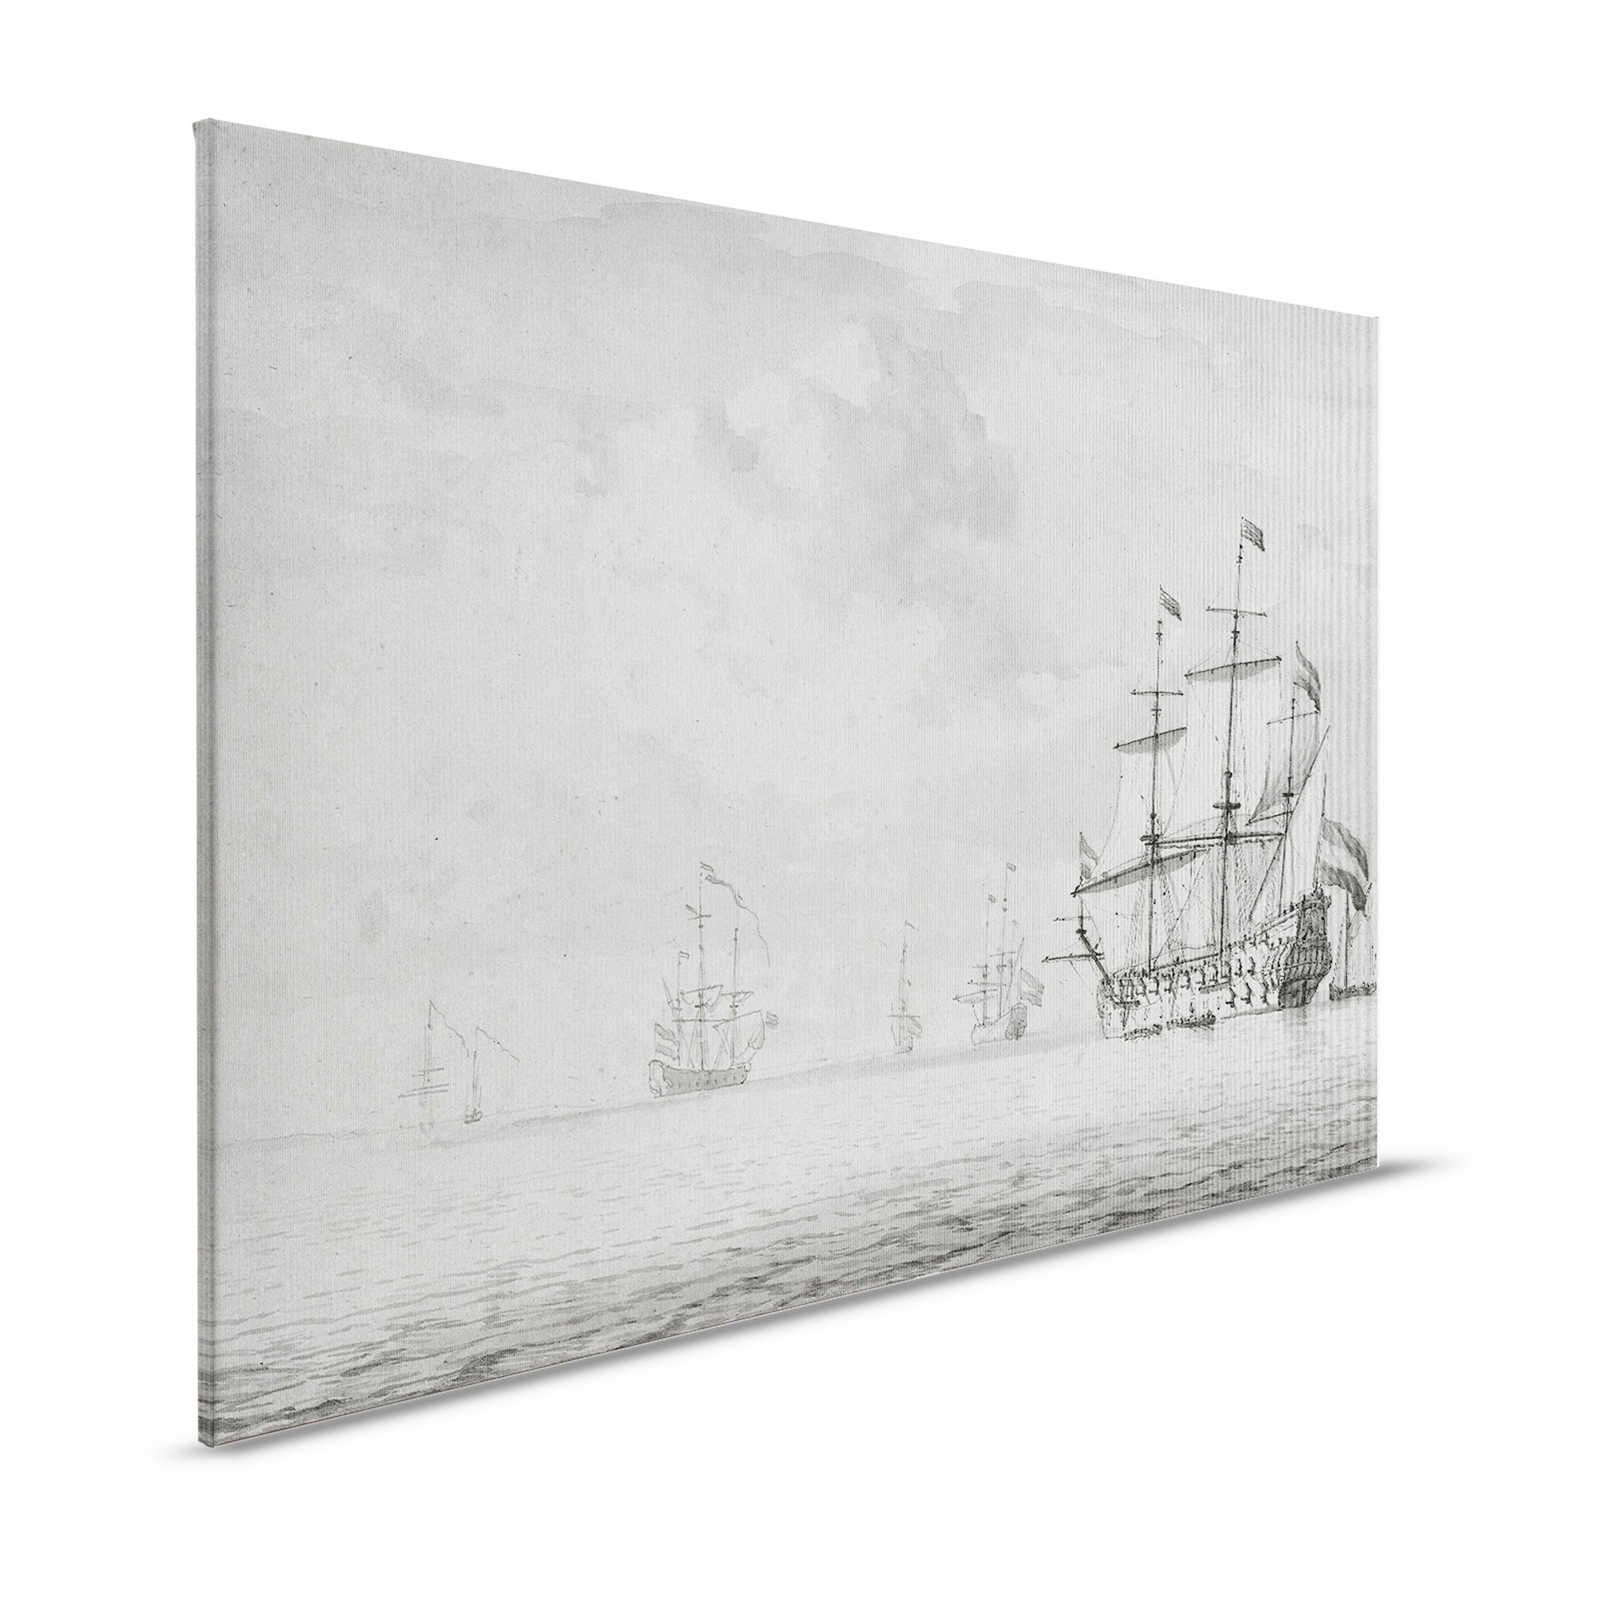 Op zee 2 - Grijs Beige Canvas schilderij Schepen Vintage schilderstijl - 1.20 m x 0.80 m
